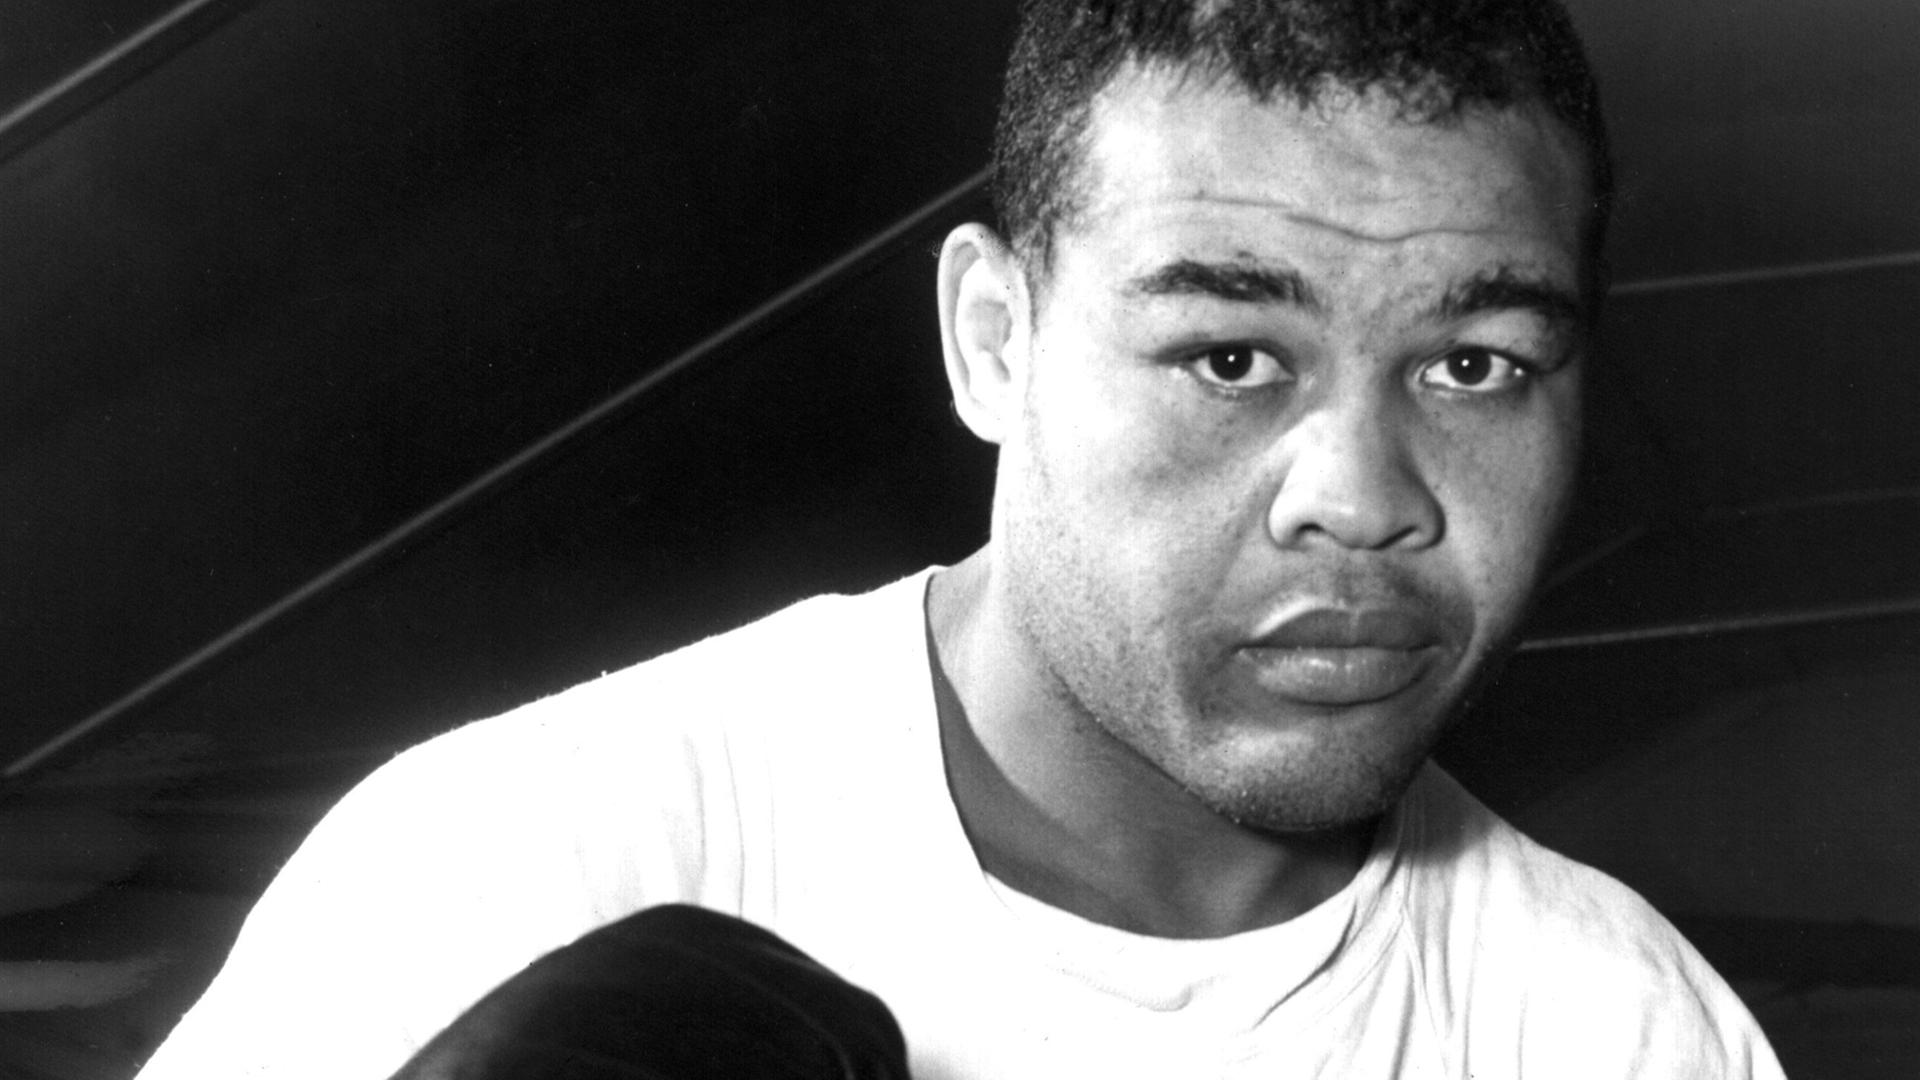 Zu sehen ist der afroamerikanische Boxer Joe Louis in einer Aufnahme von 1950. Er trägt ein weißes T-Shirt und schwarze Boxhandschuhe und präsentiert die Fäuste in typischer Boxermanier dem Betrachter.